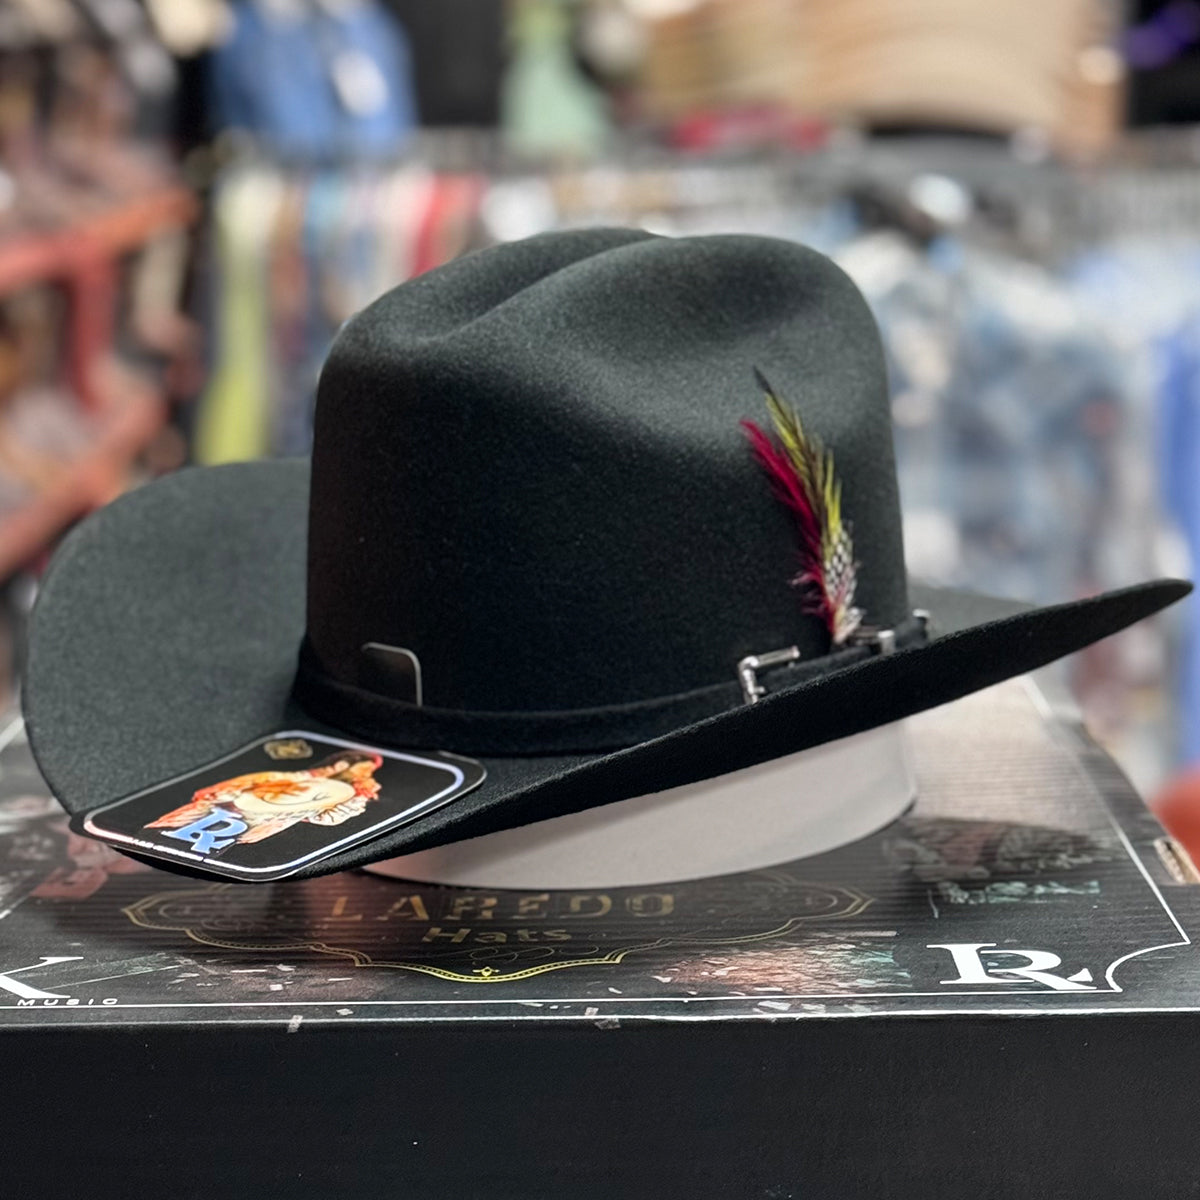 Felt Cowboy Hats - Tejana Hats